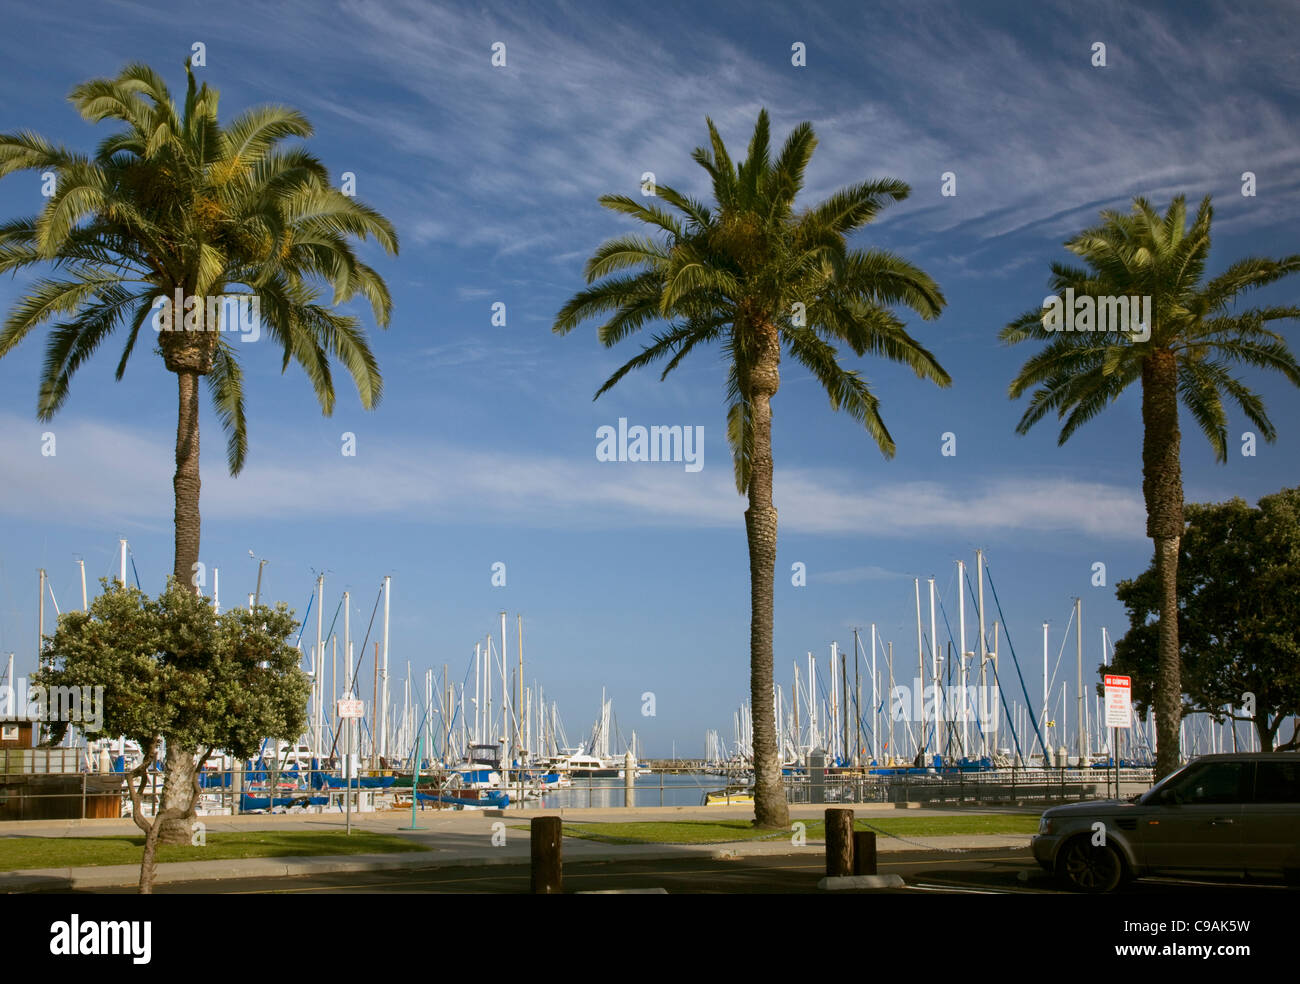 CALIFORNIA - Palm trees along the edge of the marina in the Santa Barbara Harbor. Stock Photo